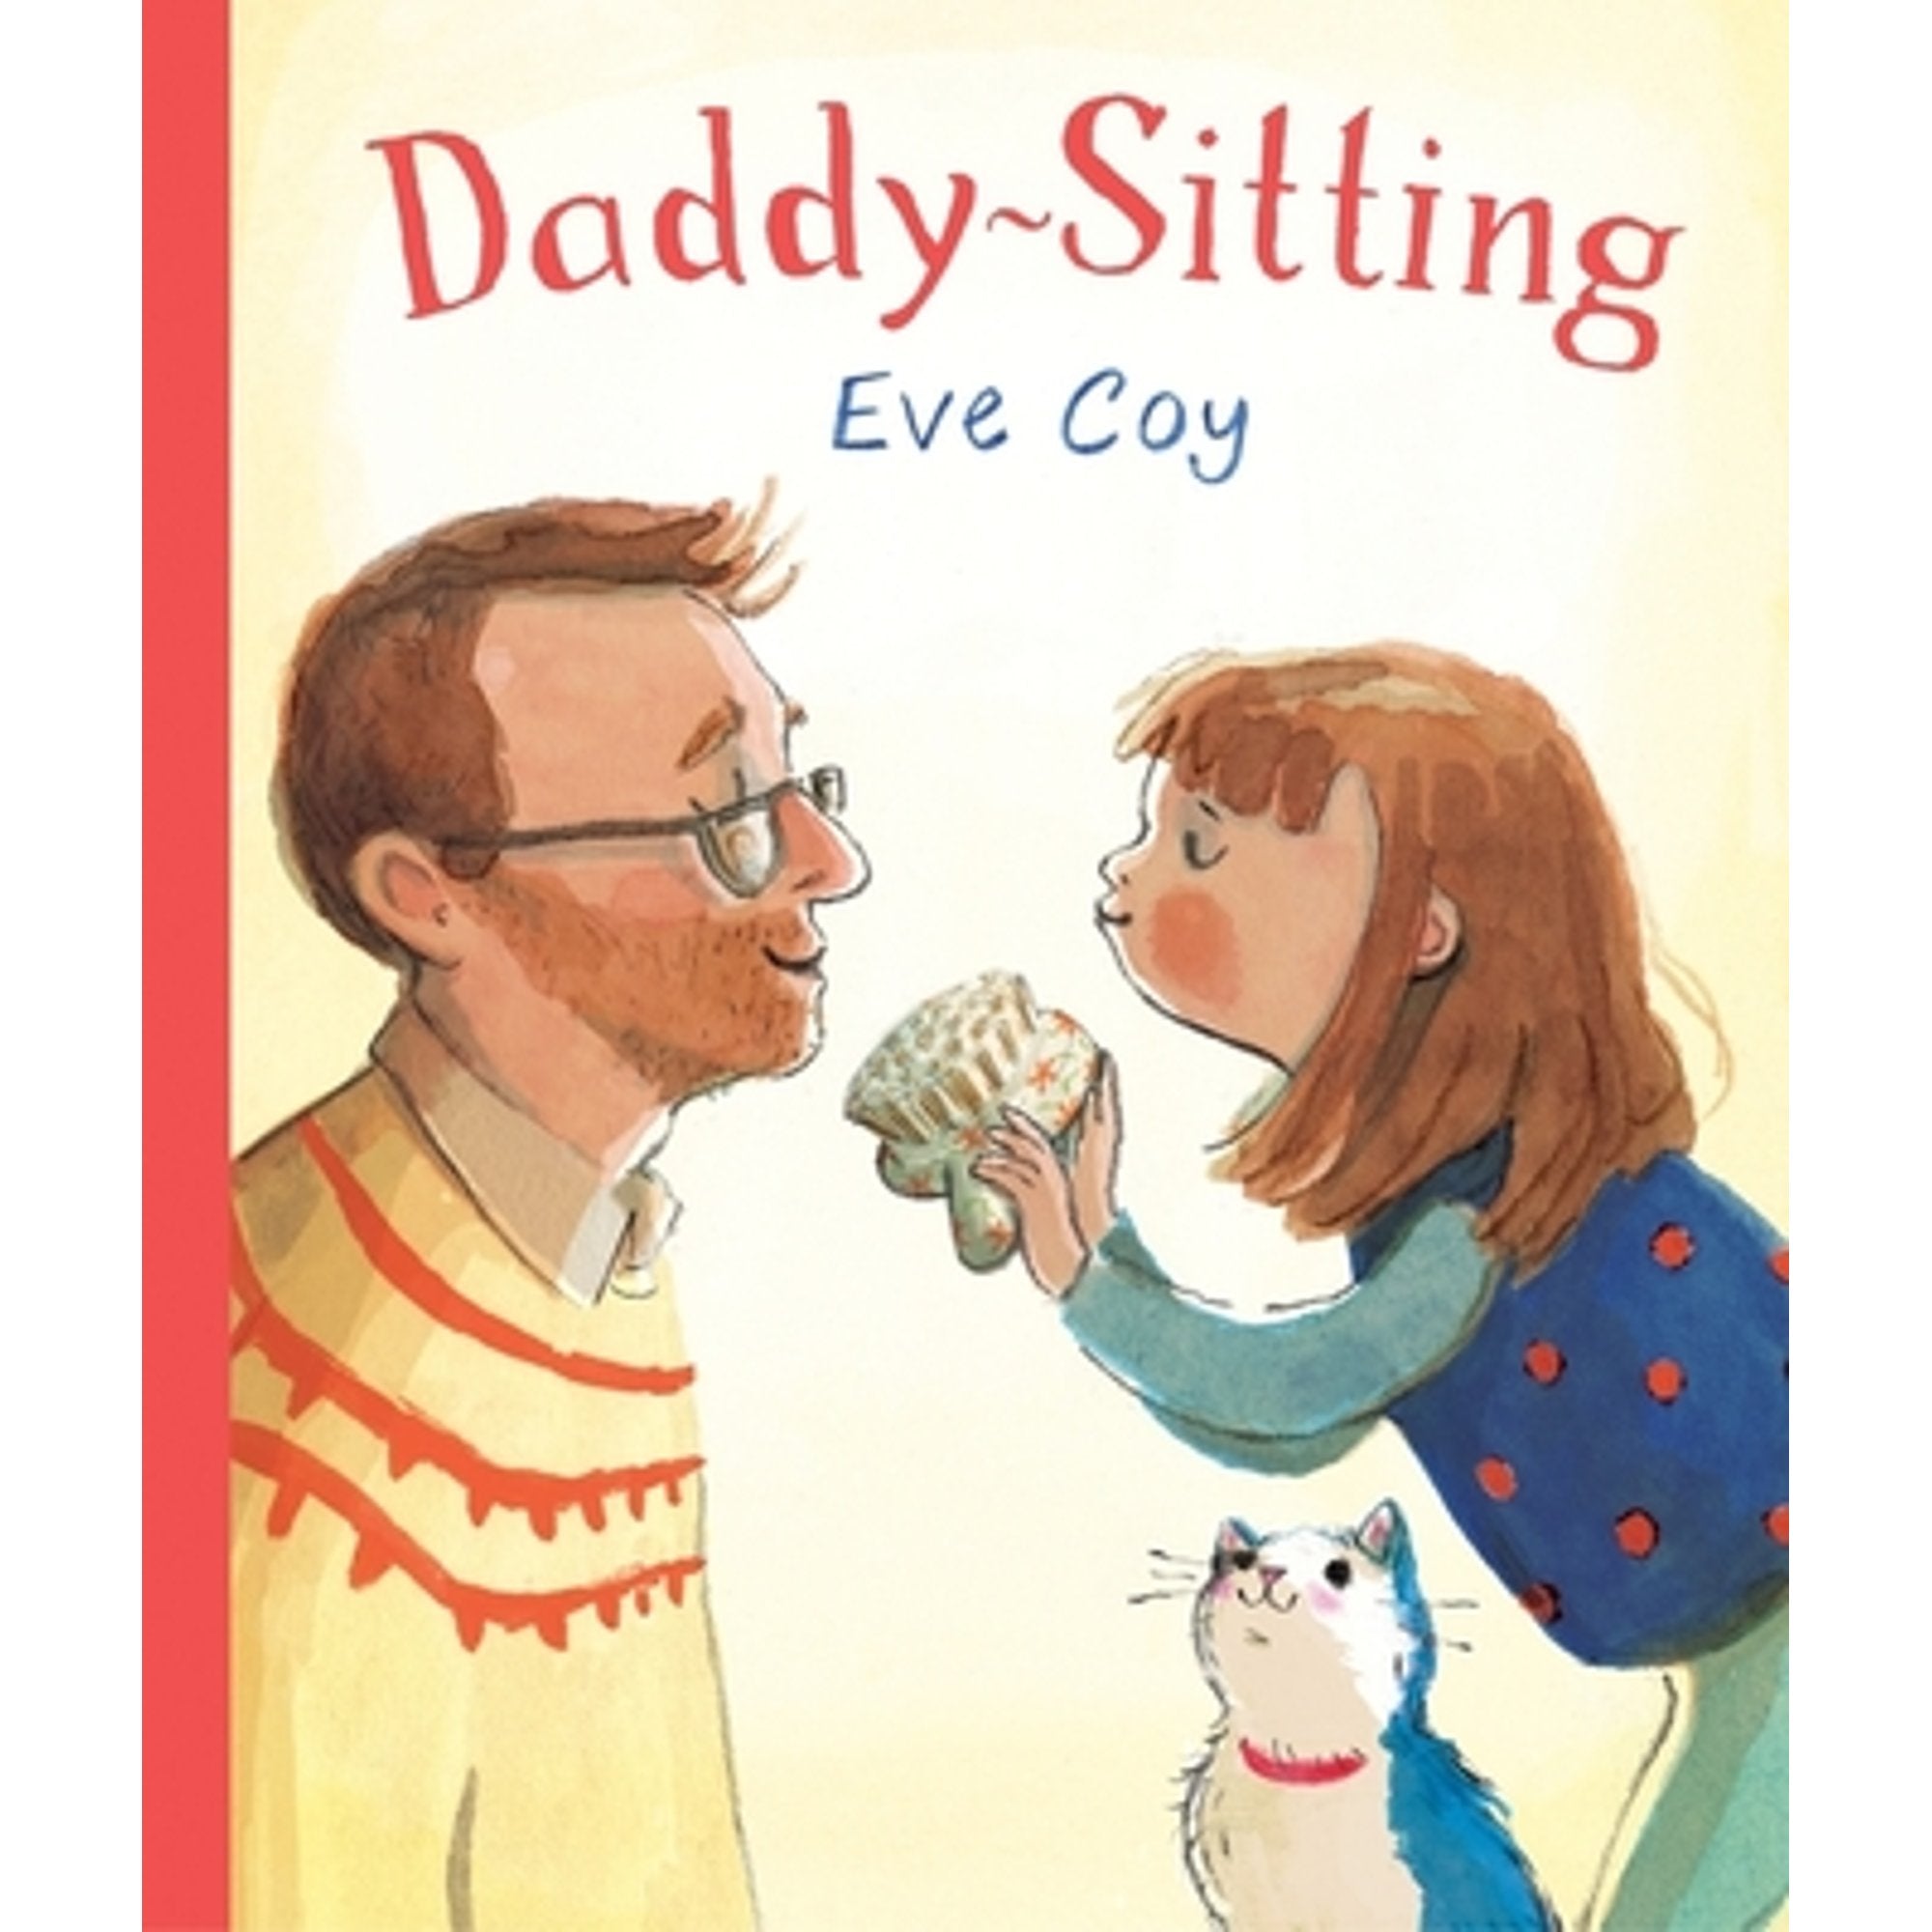 Daddy-Sitting Book